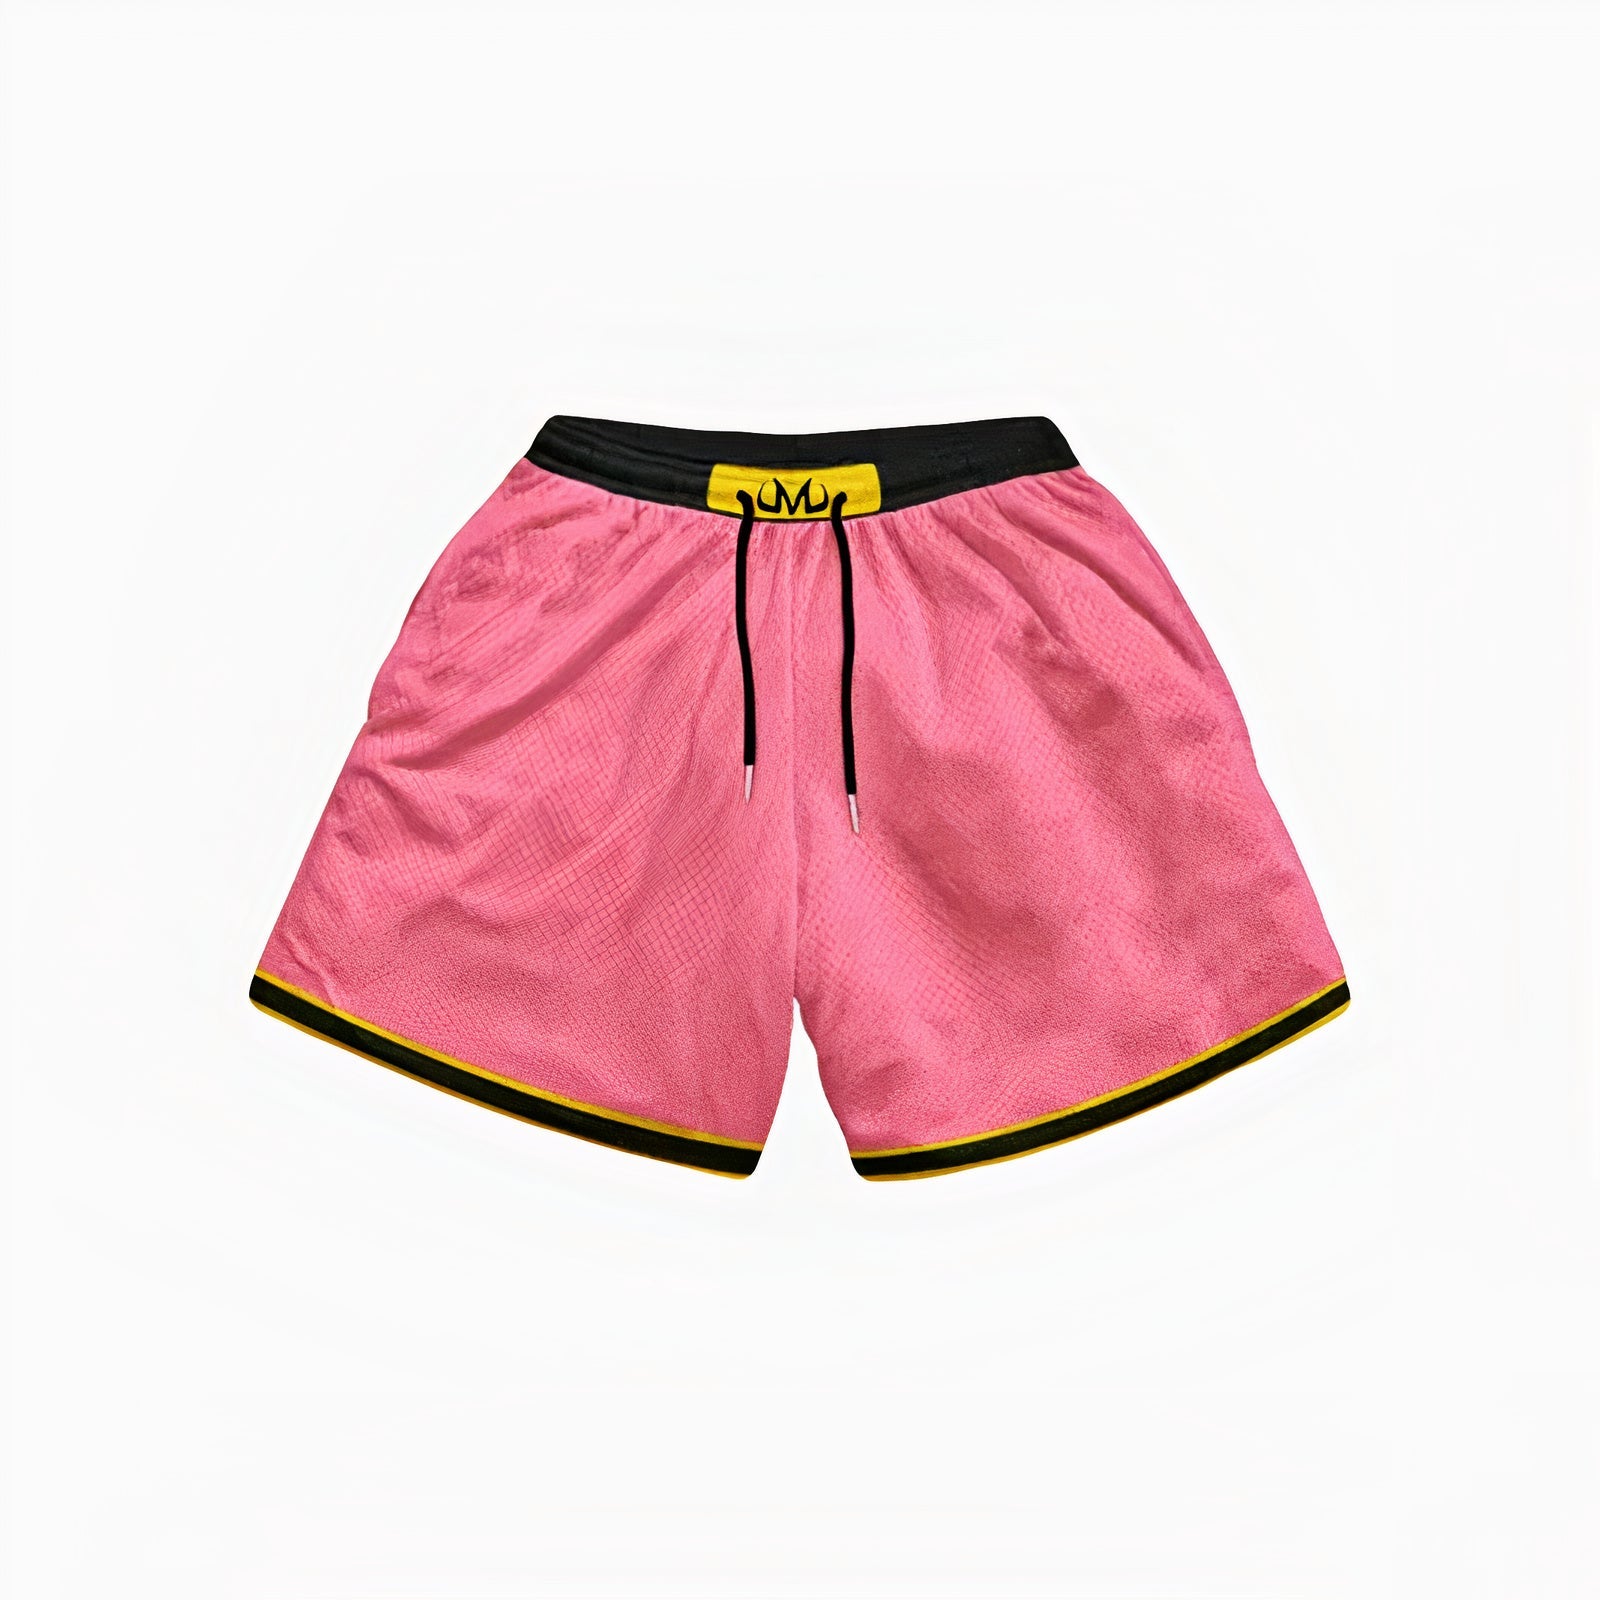 Majin Buu Pink Shorts – Nen Culture